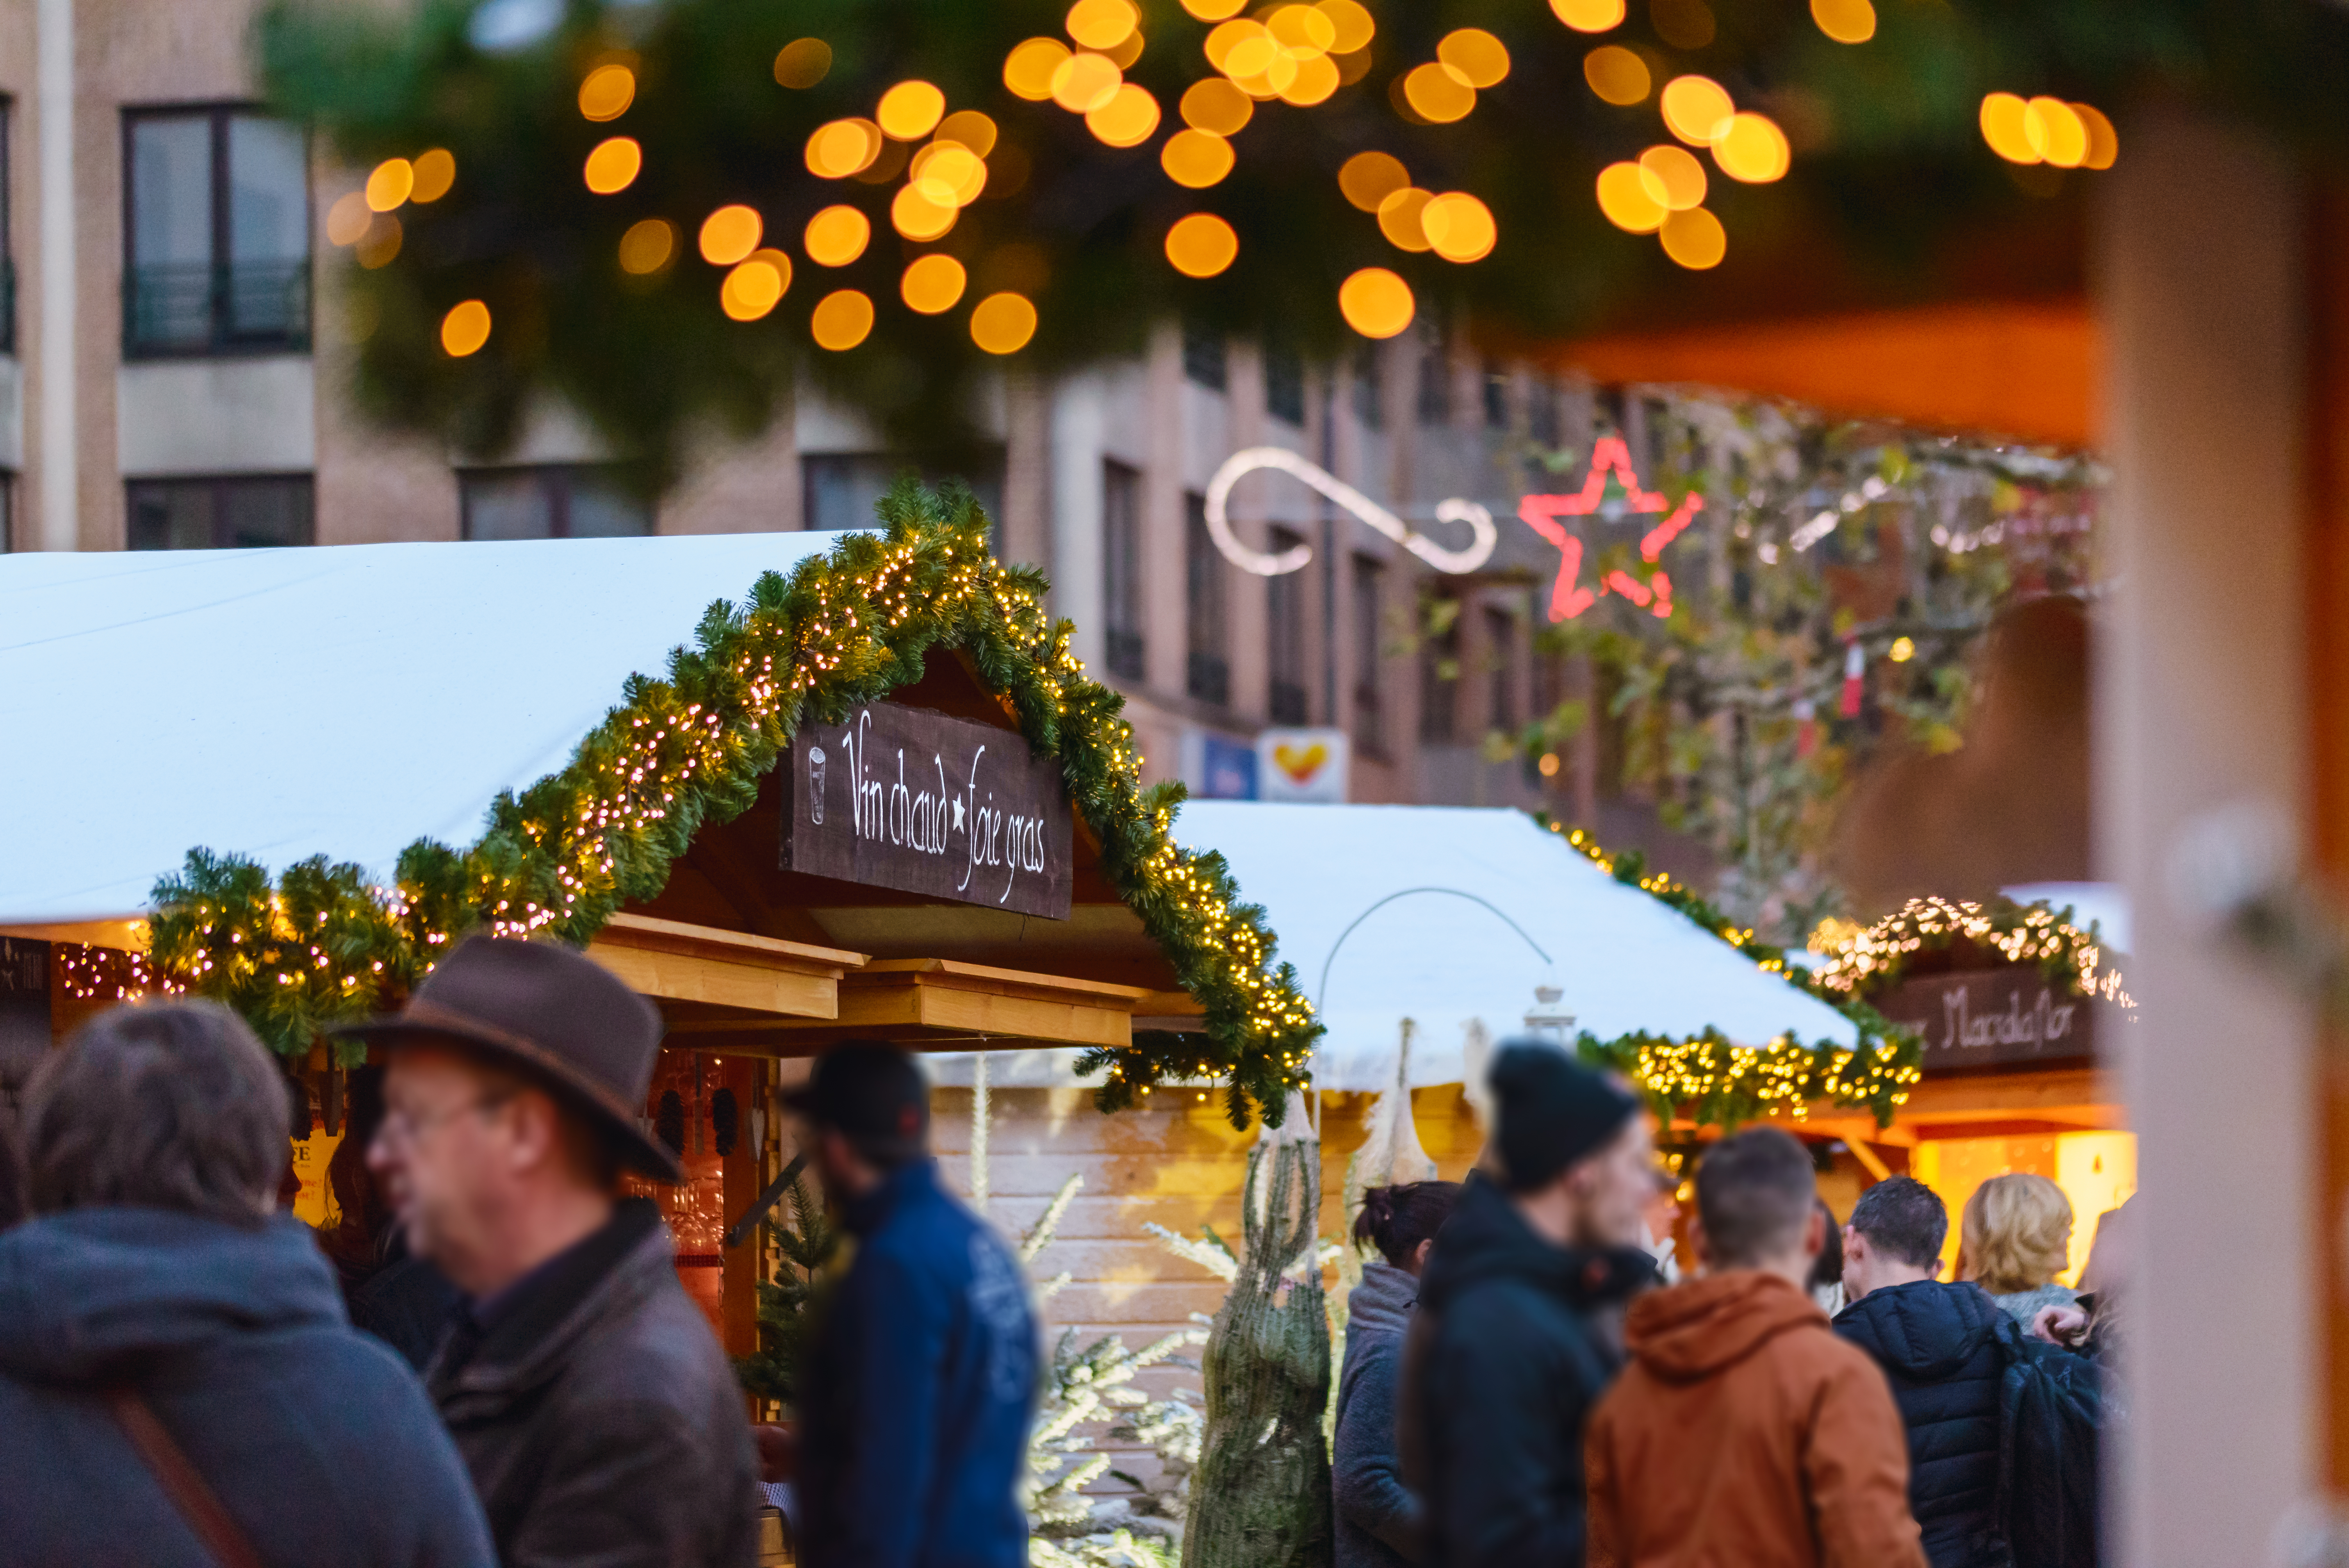 Dégustez un vin chaud au Marché de Noël de Louvain-la-Neuve